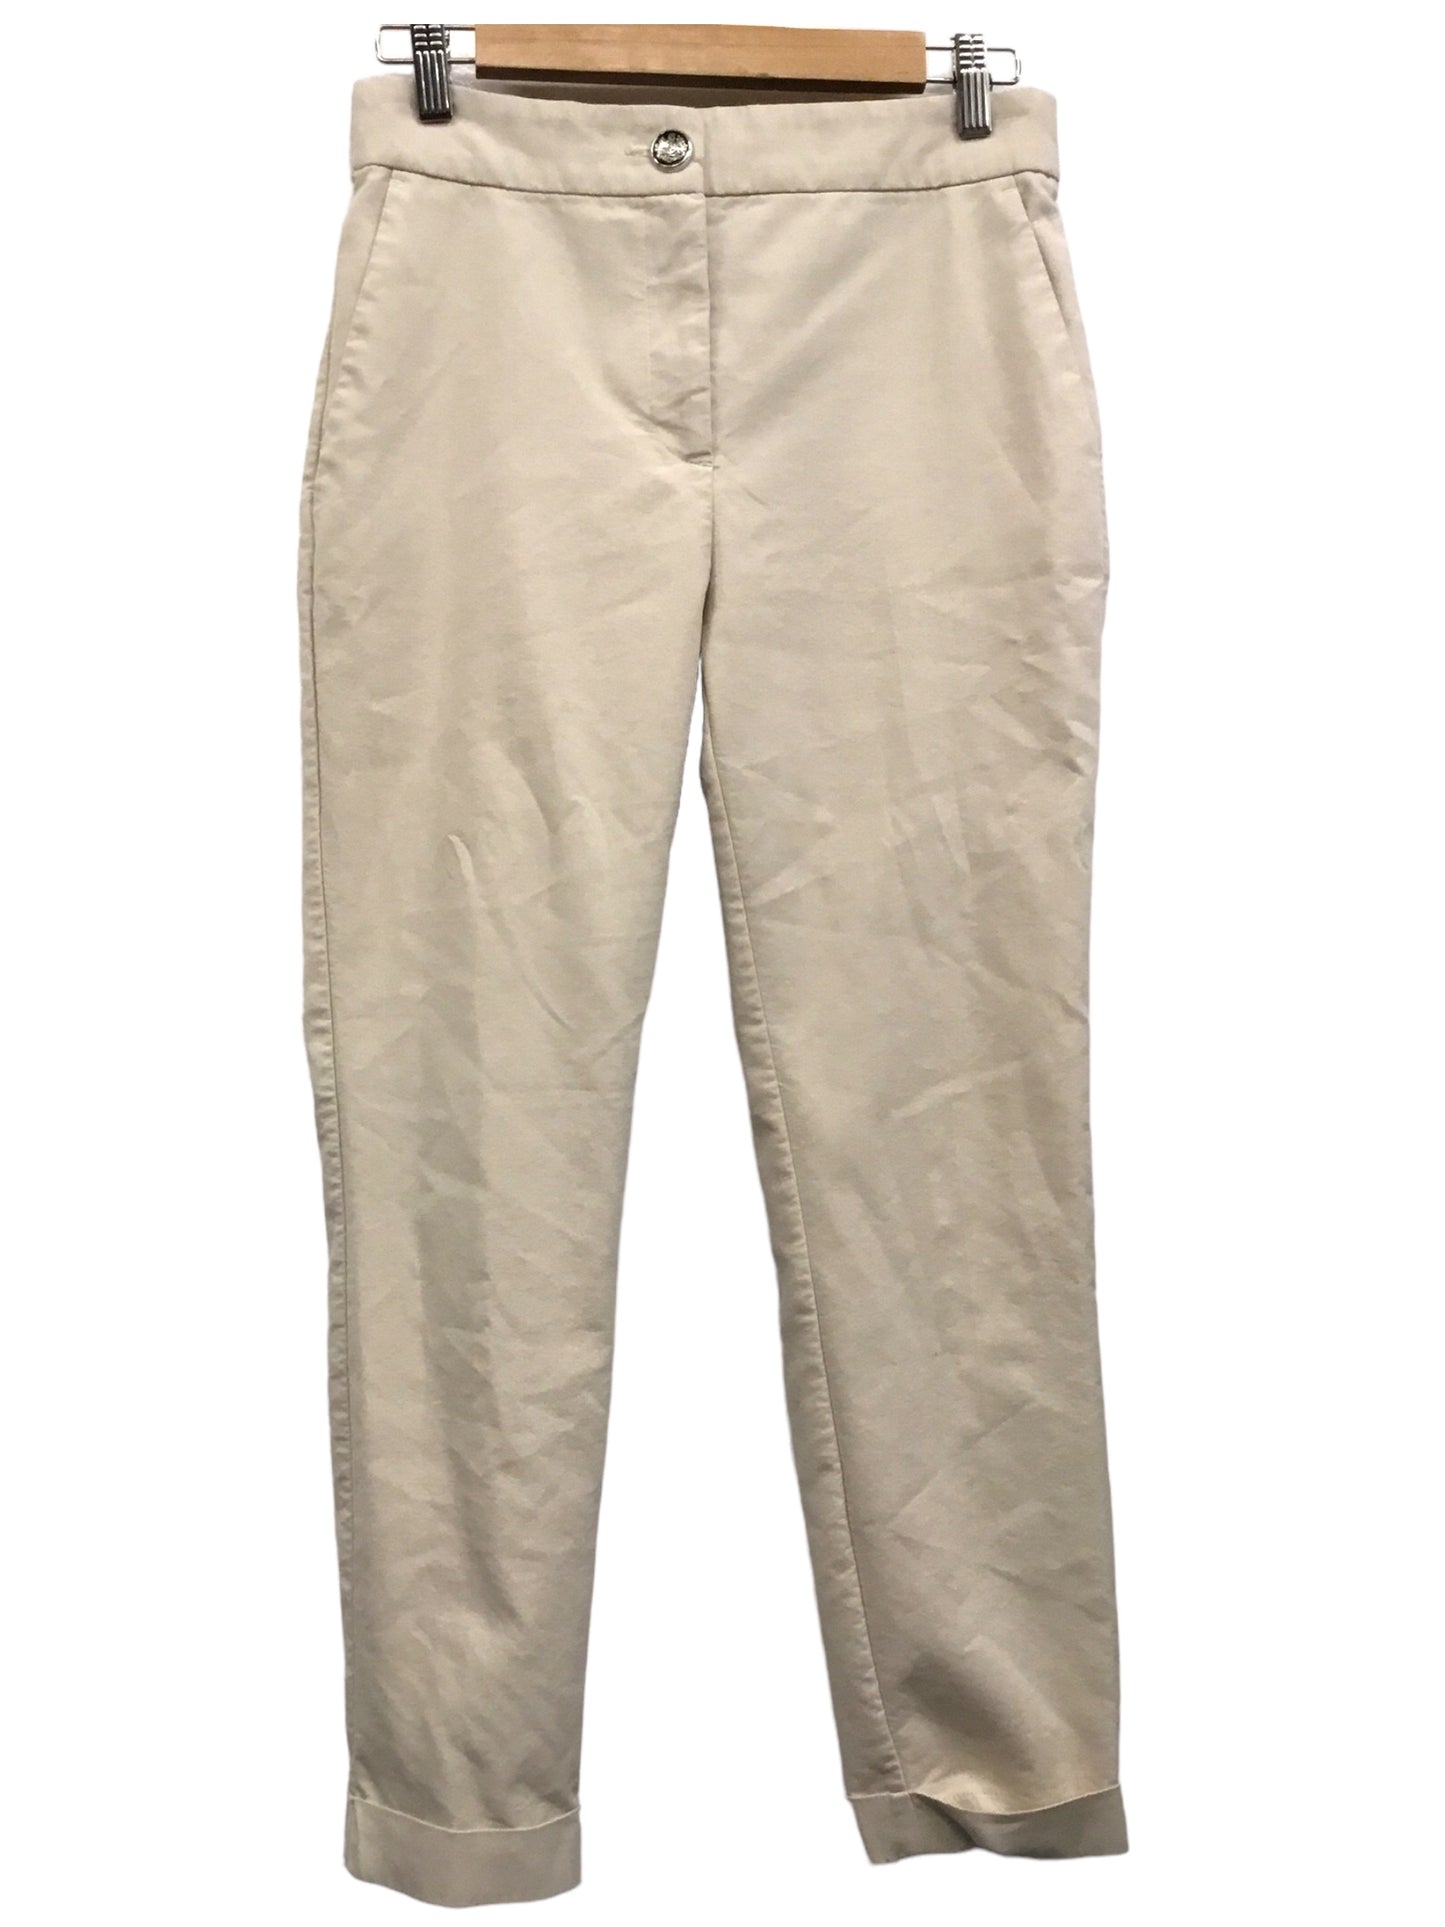 Pants Chinos & Khakis By Zara  Size: M